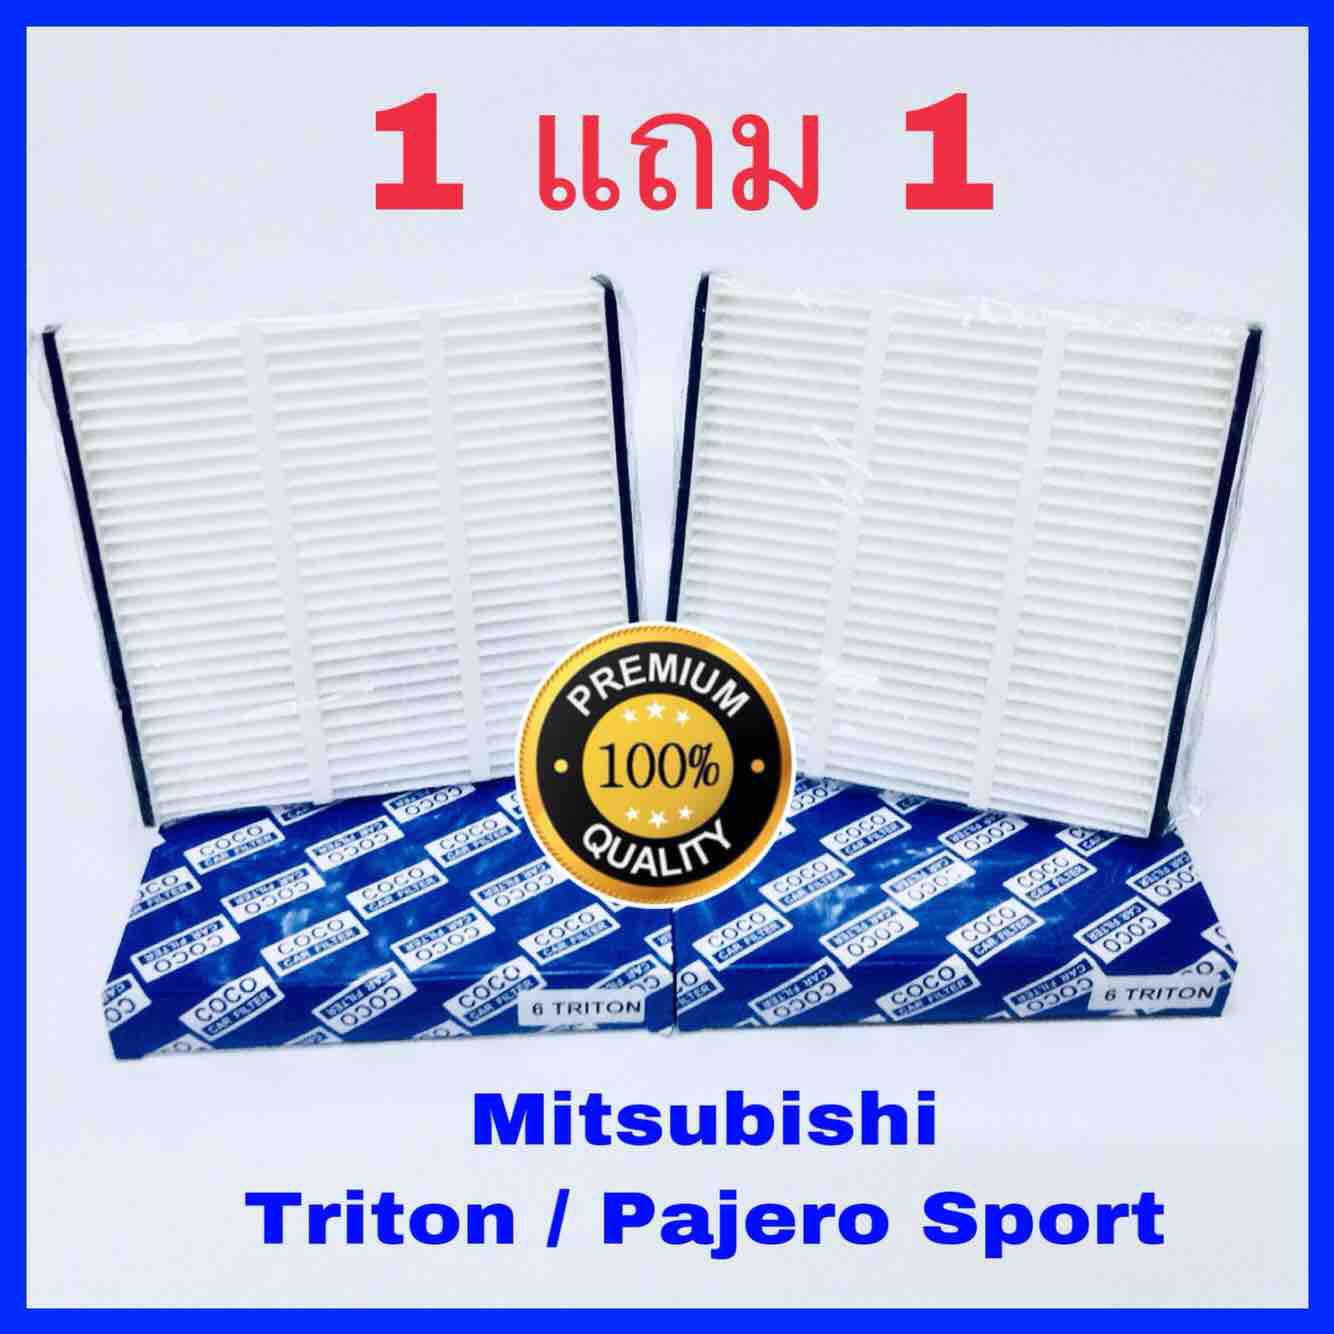 กรองแอร์ Mitsubishi Triton ไทรทัน, Pajero Sport ปาเจโร่ สปอร์ท ปี 2005-2014  ซื้อ 1 แถม 1